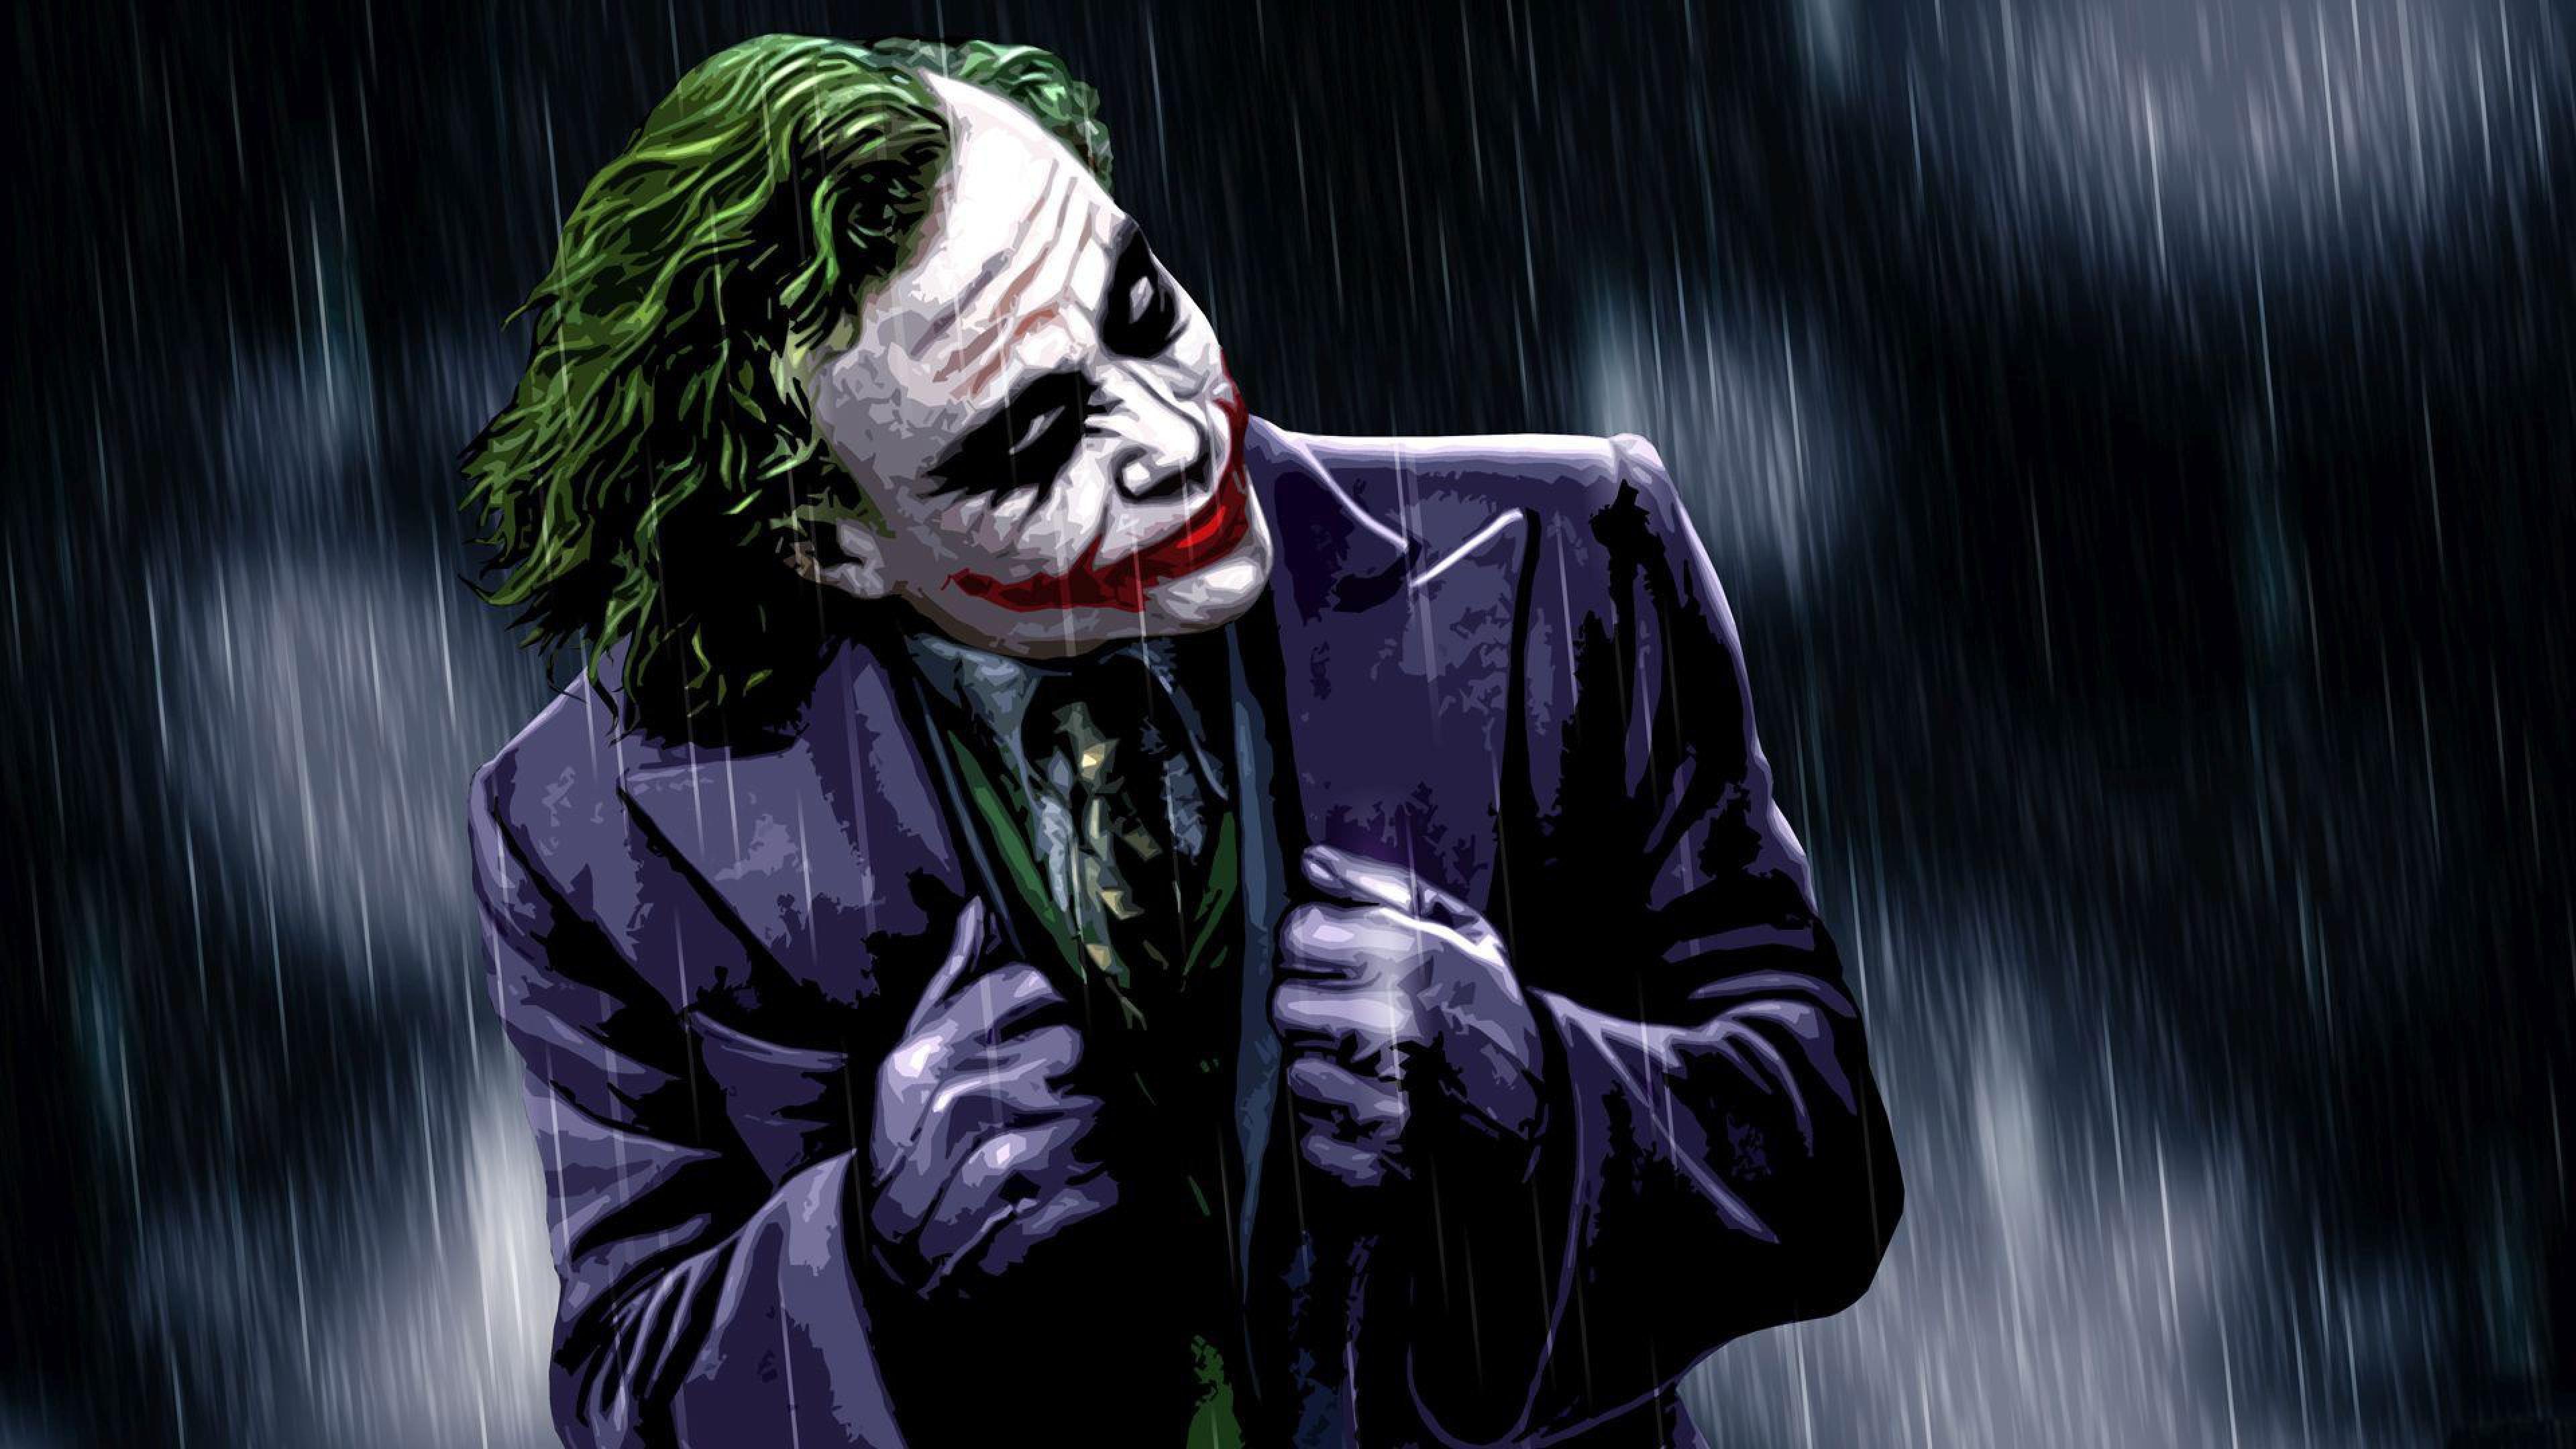 The Joker The Dark Knight Desktop Wallpaper HD For Mobile